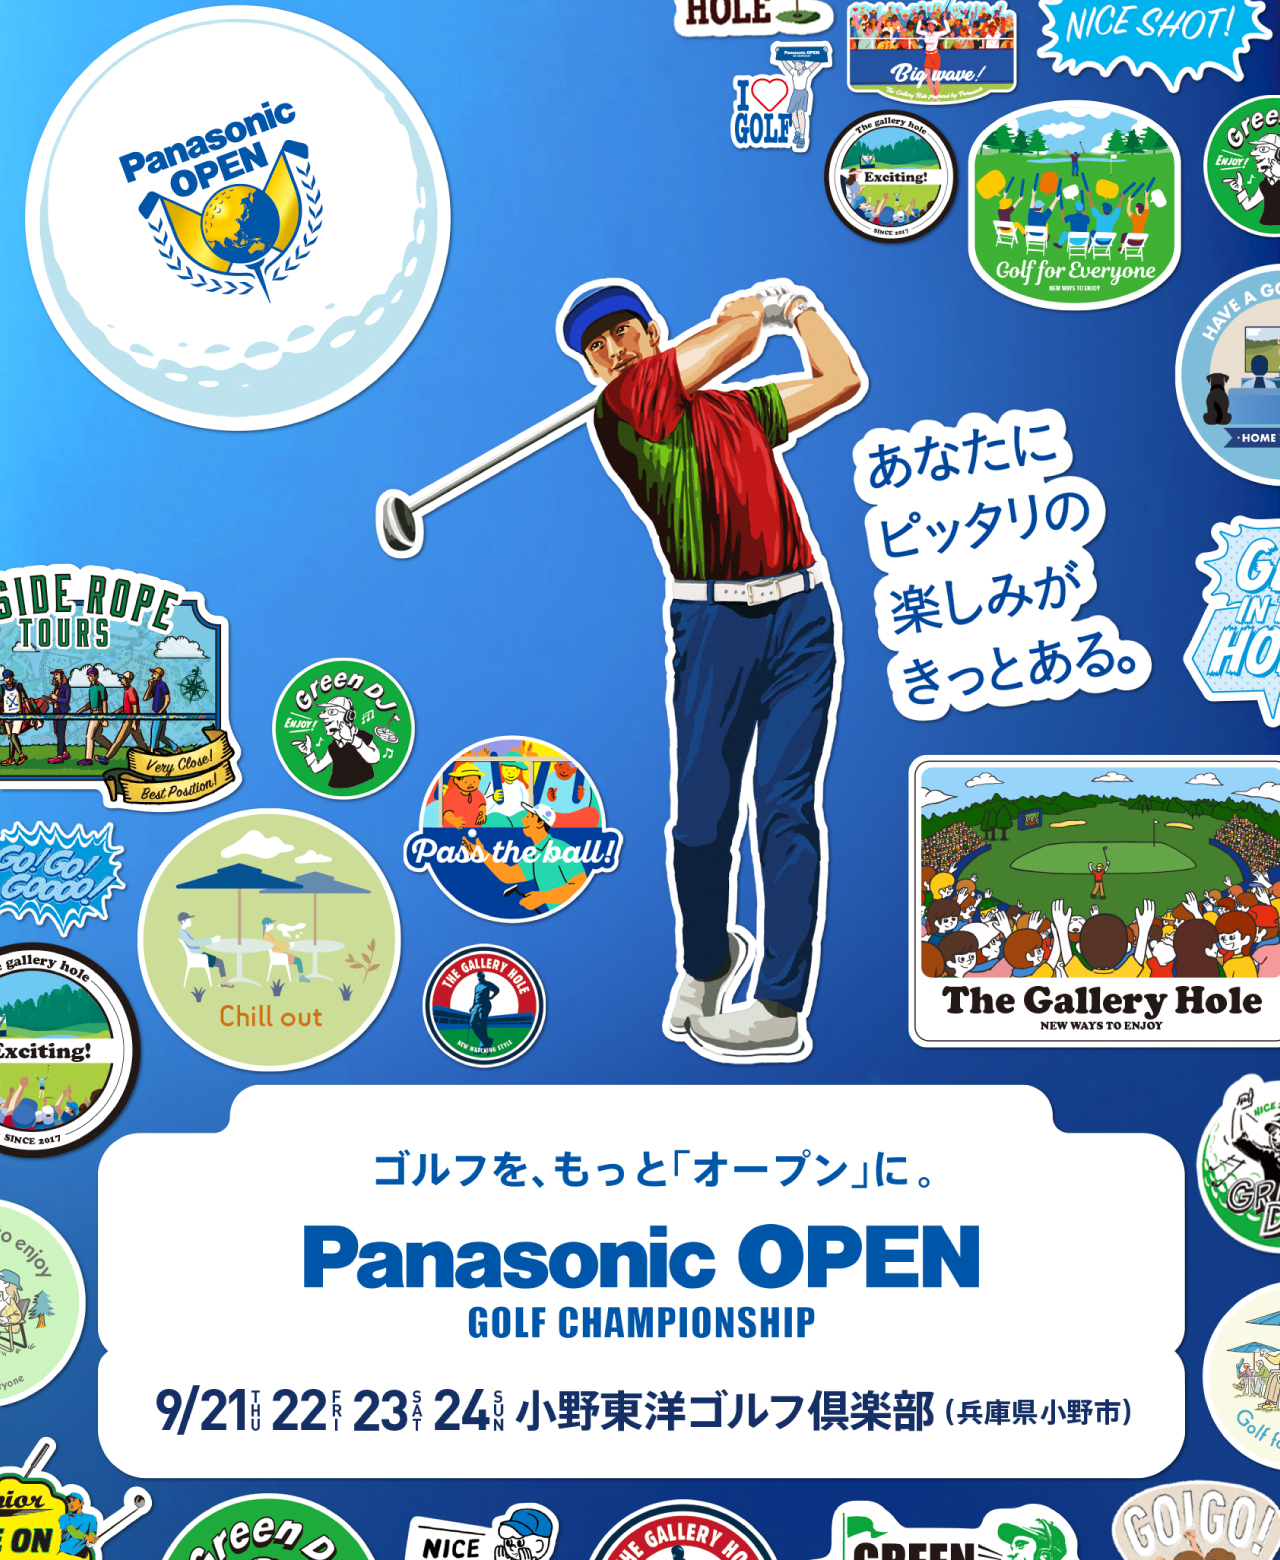 あなたにピッタリの楽しみがある。ゴルフを、もっと「オープン」に。 Panasonic OPEN GOLF CHAMPIONSHIP 2023. 9/21（THU）、22（FRI）、23（SAT）、24（SUN） 小野東洋ゴルフ倶楽部（兵庫県小野市）